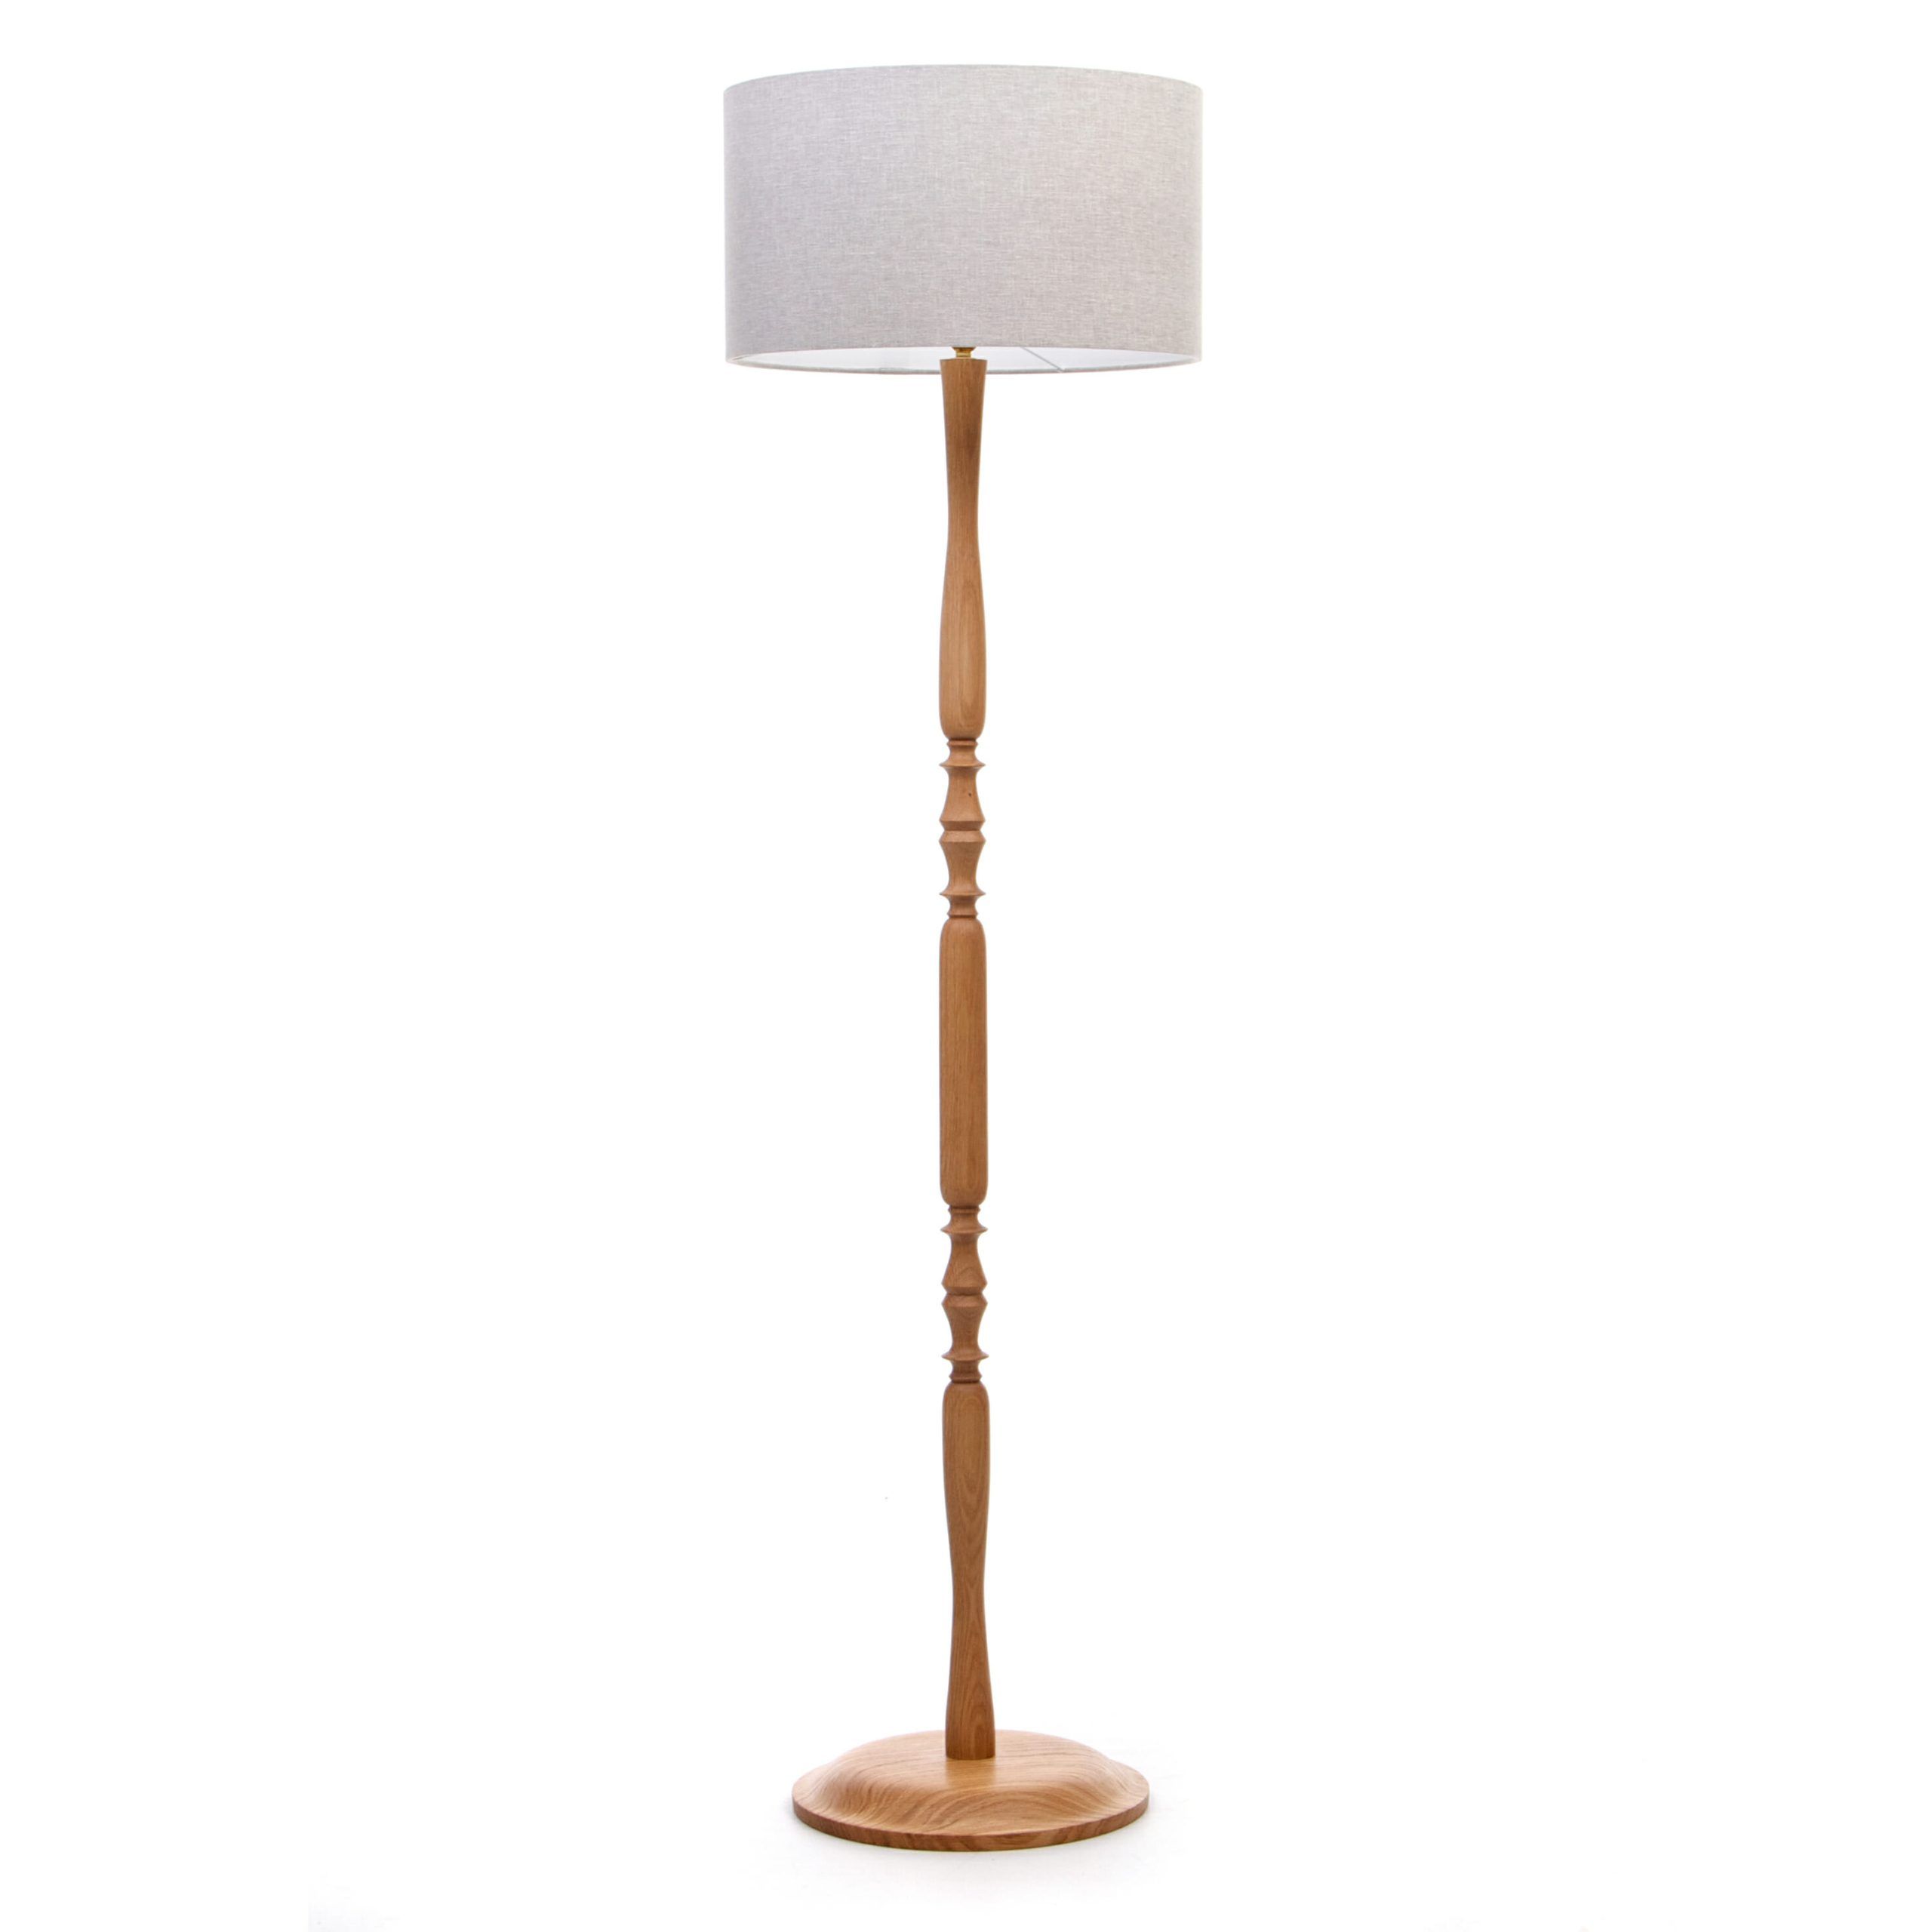 Classic Oak Floor Lamp | Wooden Floor Lamp | Handmade In The Uknick  Hammond Lighting And Furniture Within Oak Floor Lamps (View 2 of 15)